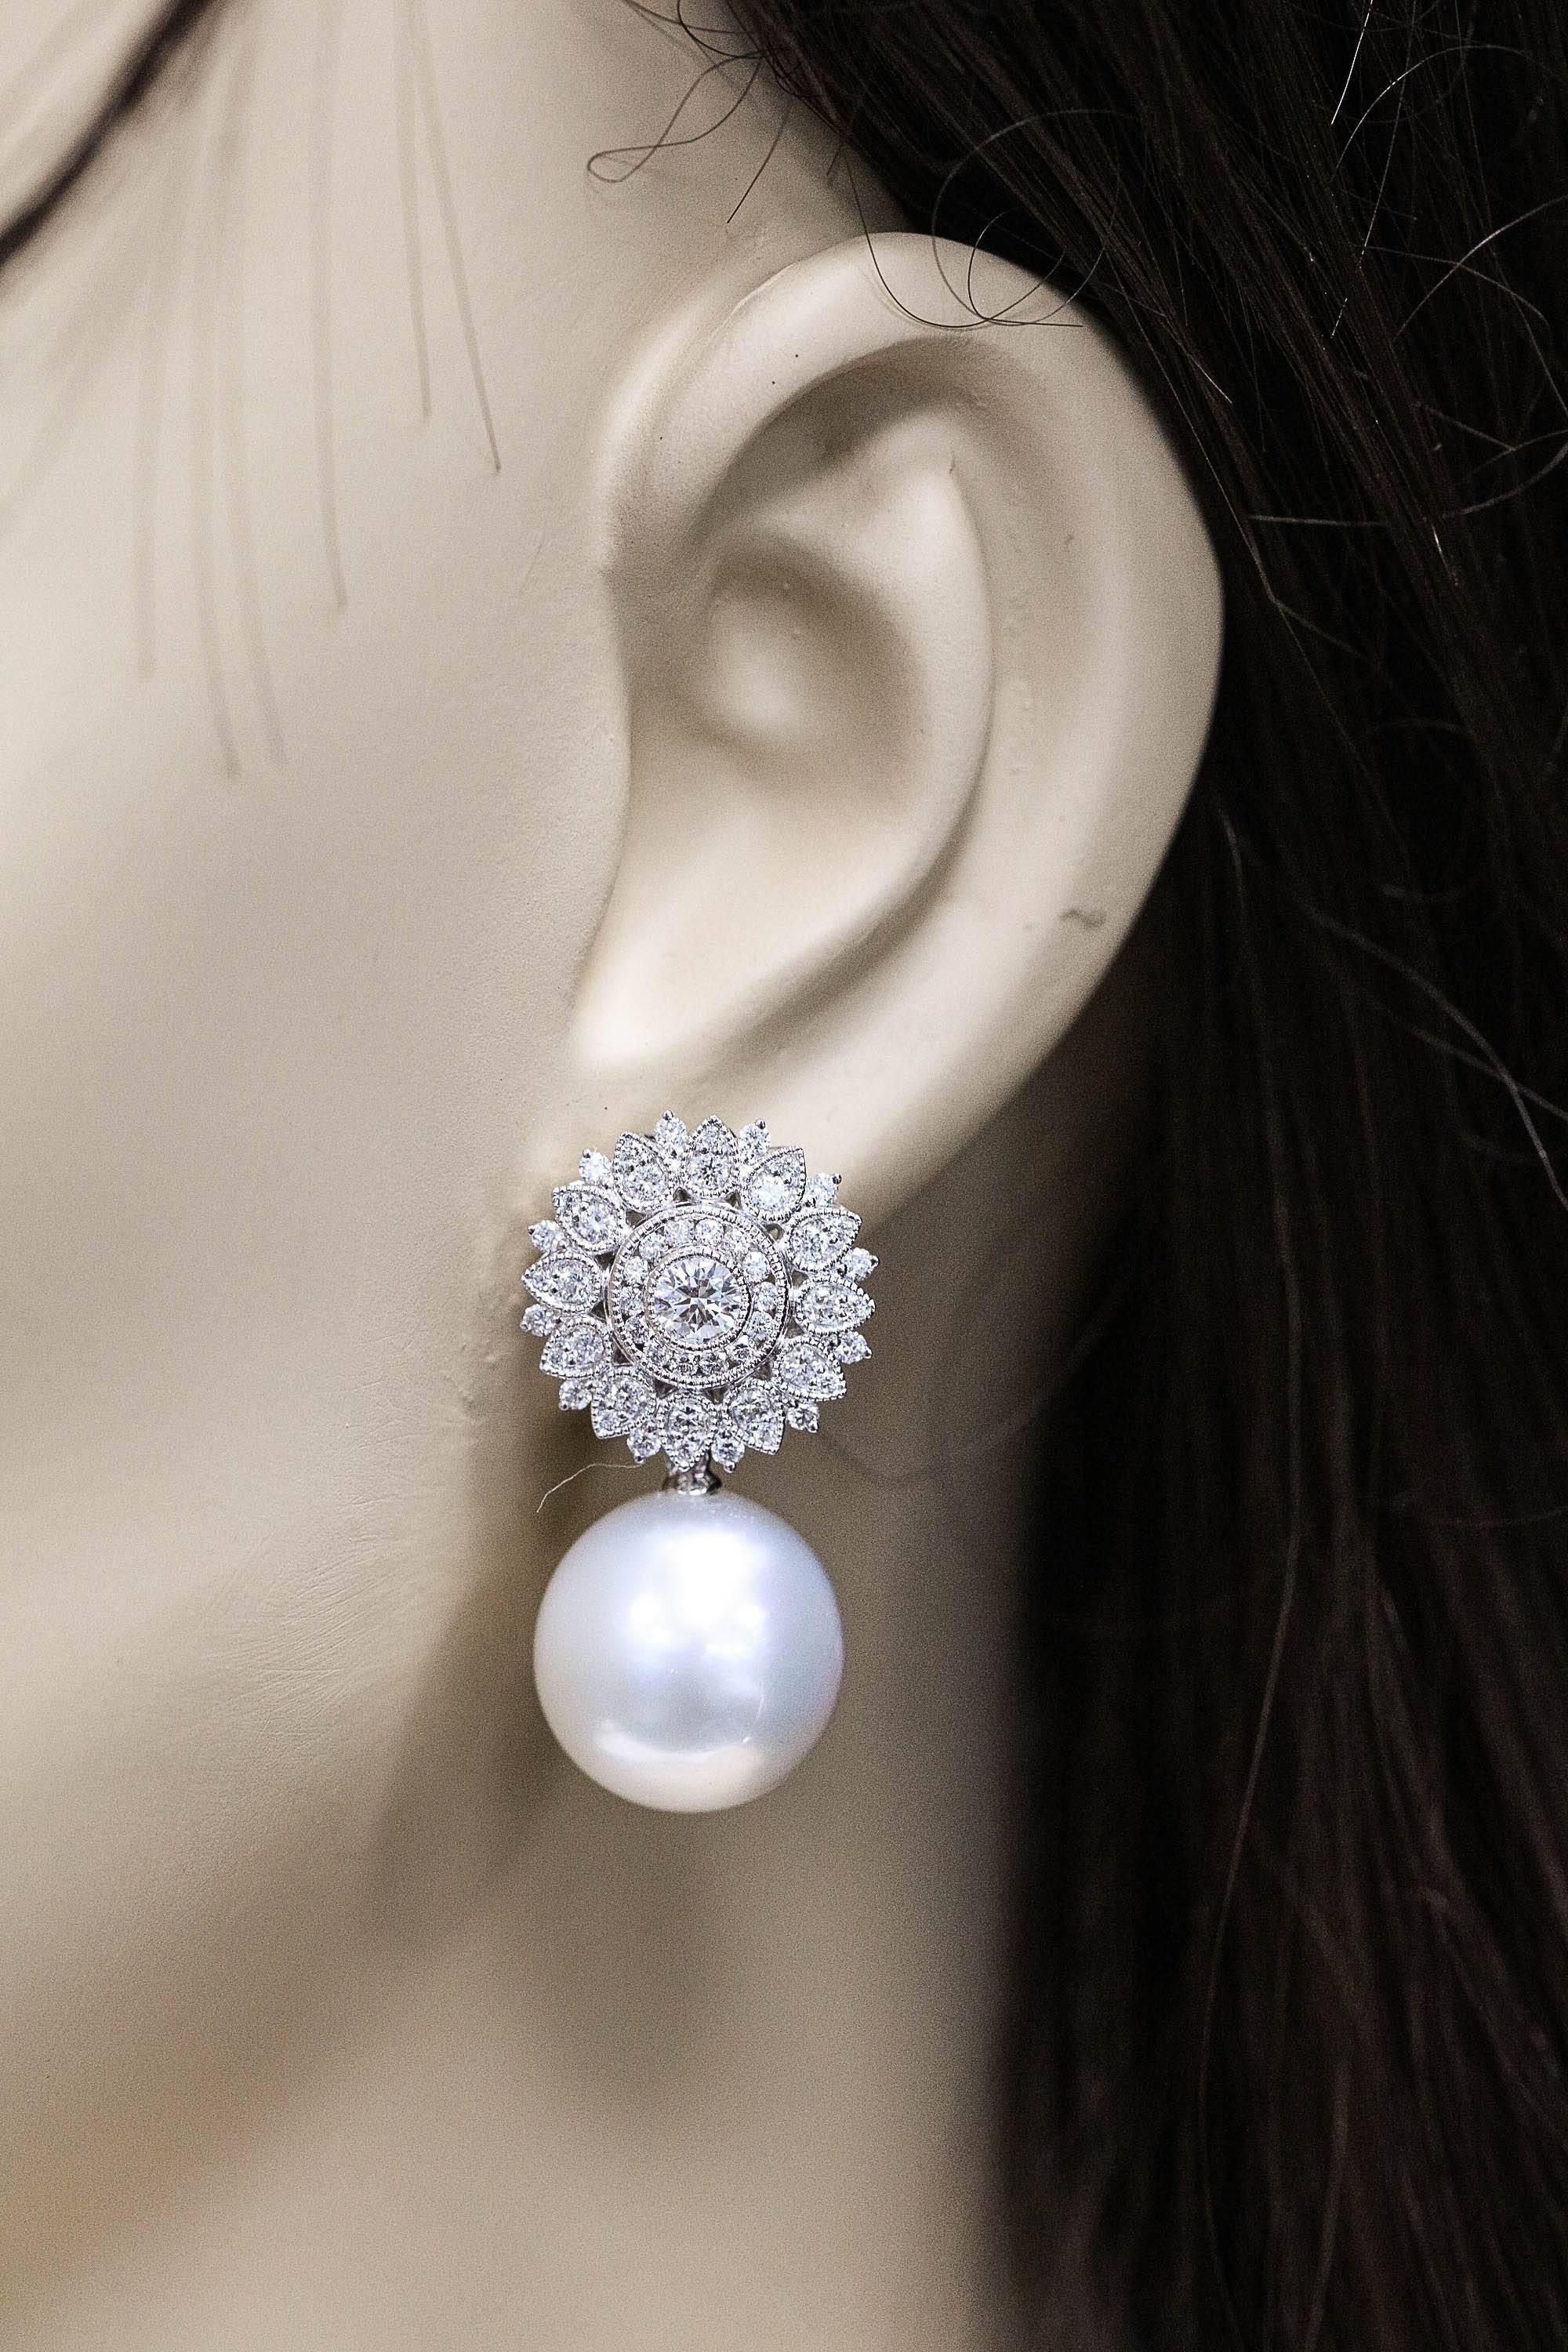 boucles d'oreilles en or blanc 18 carats avec un motif de tournesol en diamant pesant 1,35 carats et deux perles des mers du Sud mesurant 14-15 mm
Couleur : G-H
Clarity SI